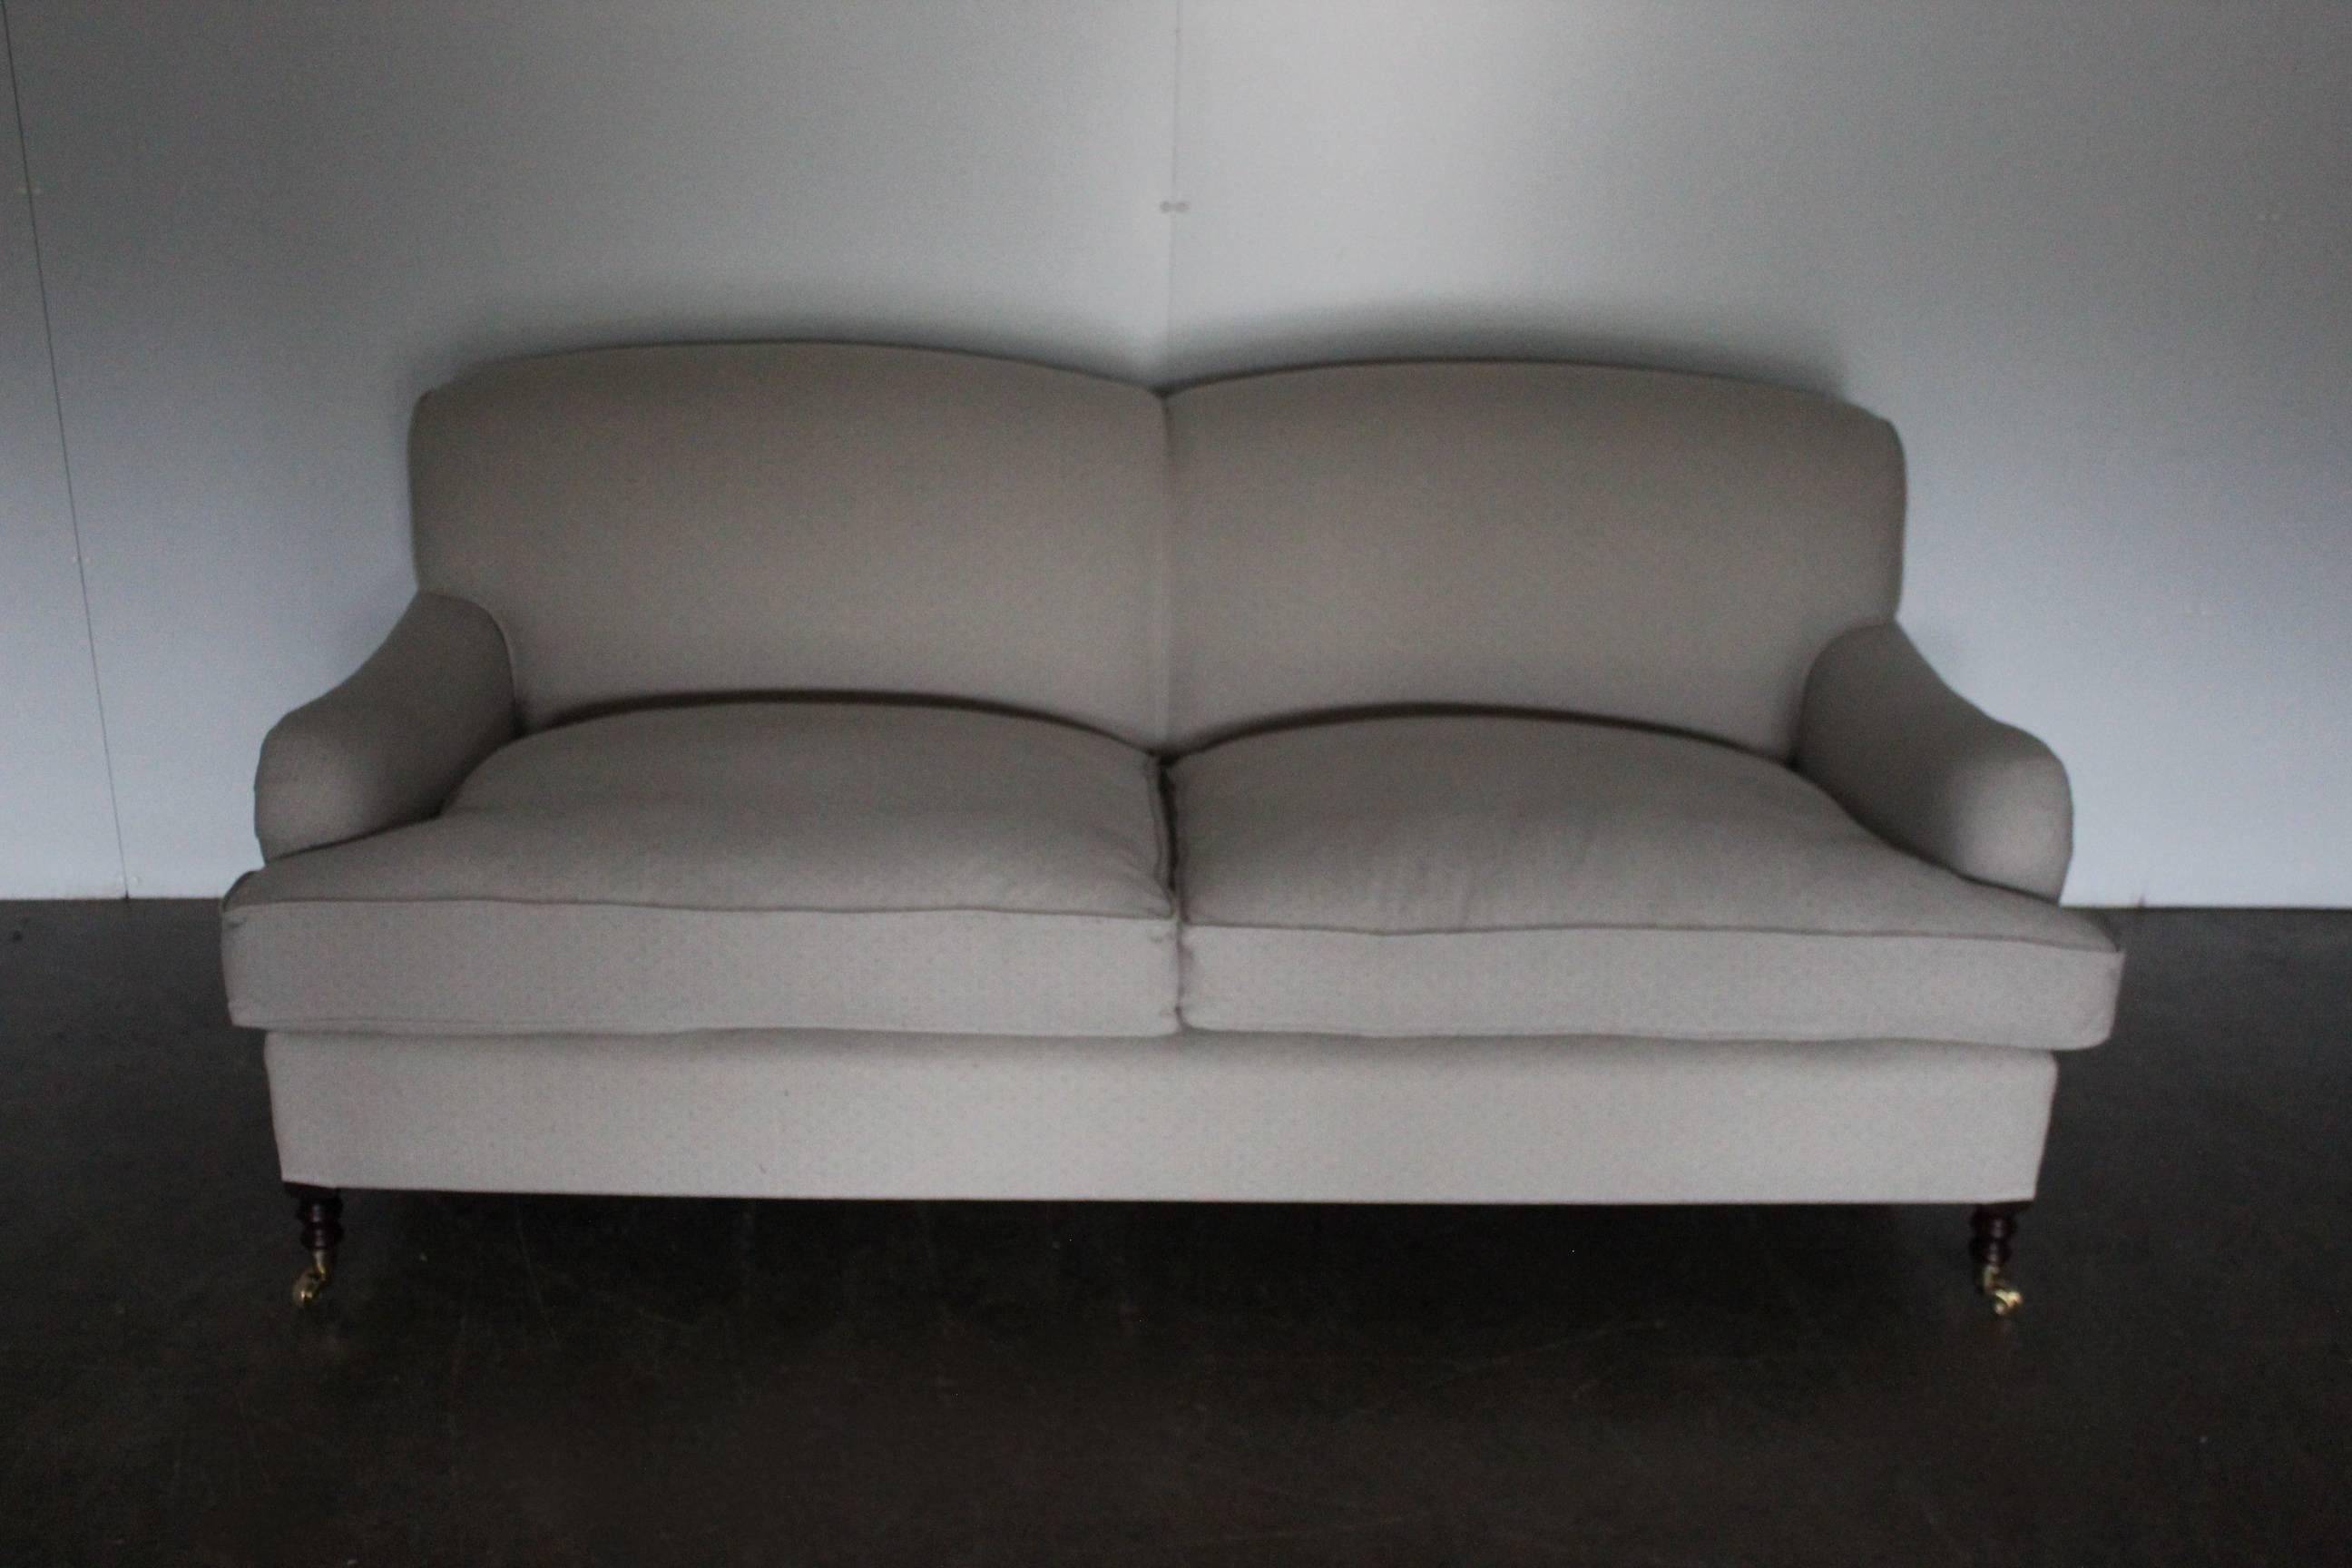 Edwardian George Smith Signature “Standard-Arm” Medium Sofa in Silver Grey Motif Fabric